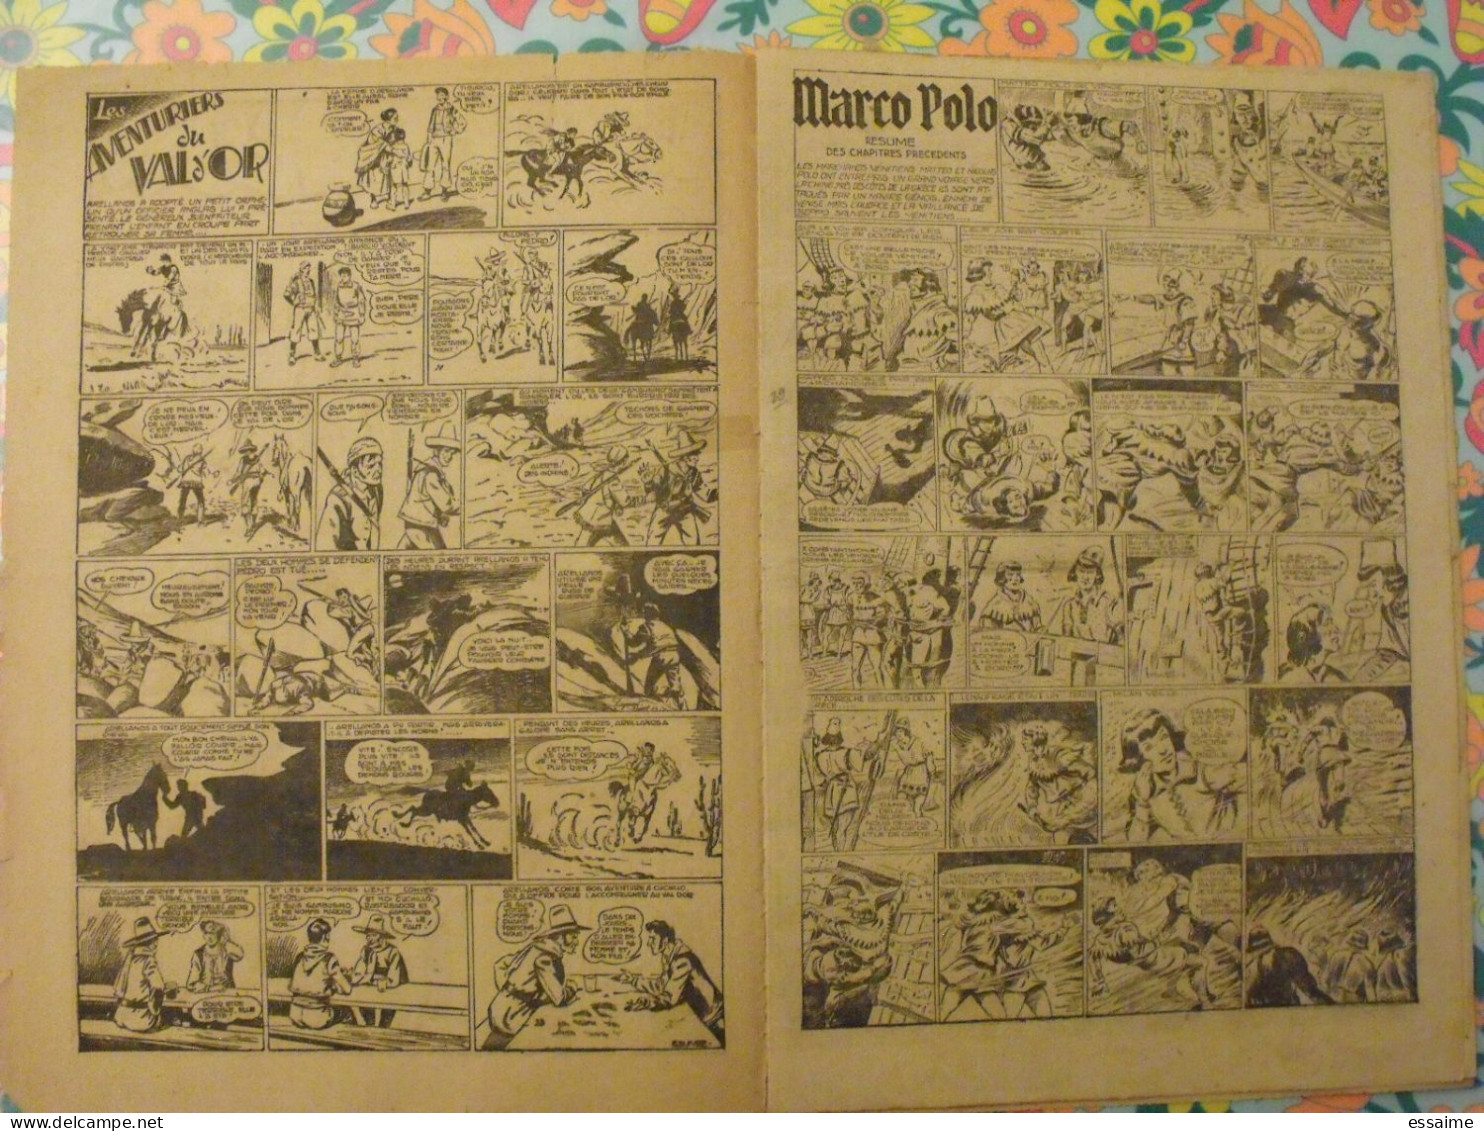 5 numéros de l'Audacieux n° 27 à 31 de 1942. Monte-cristo, le roi du far-west, christophe colomb. A redécouvrir